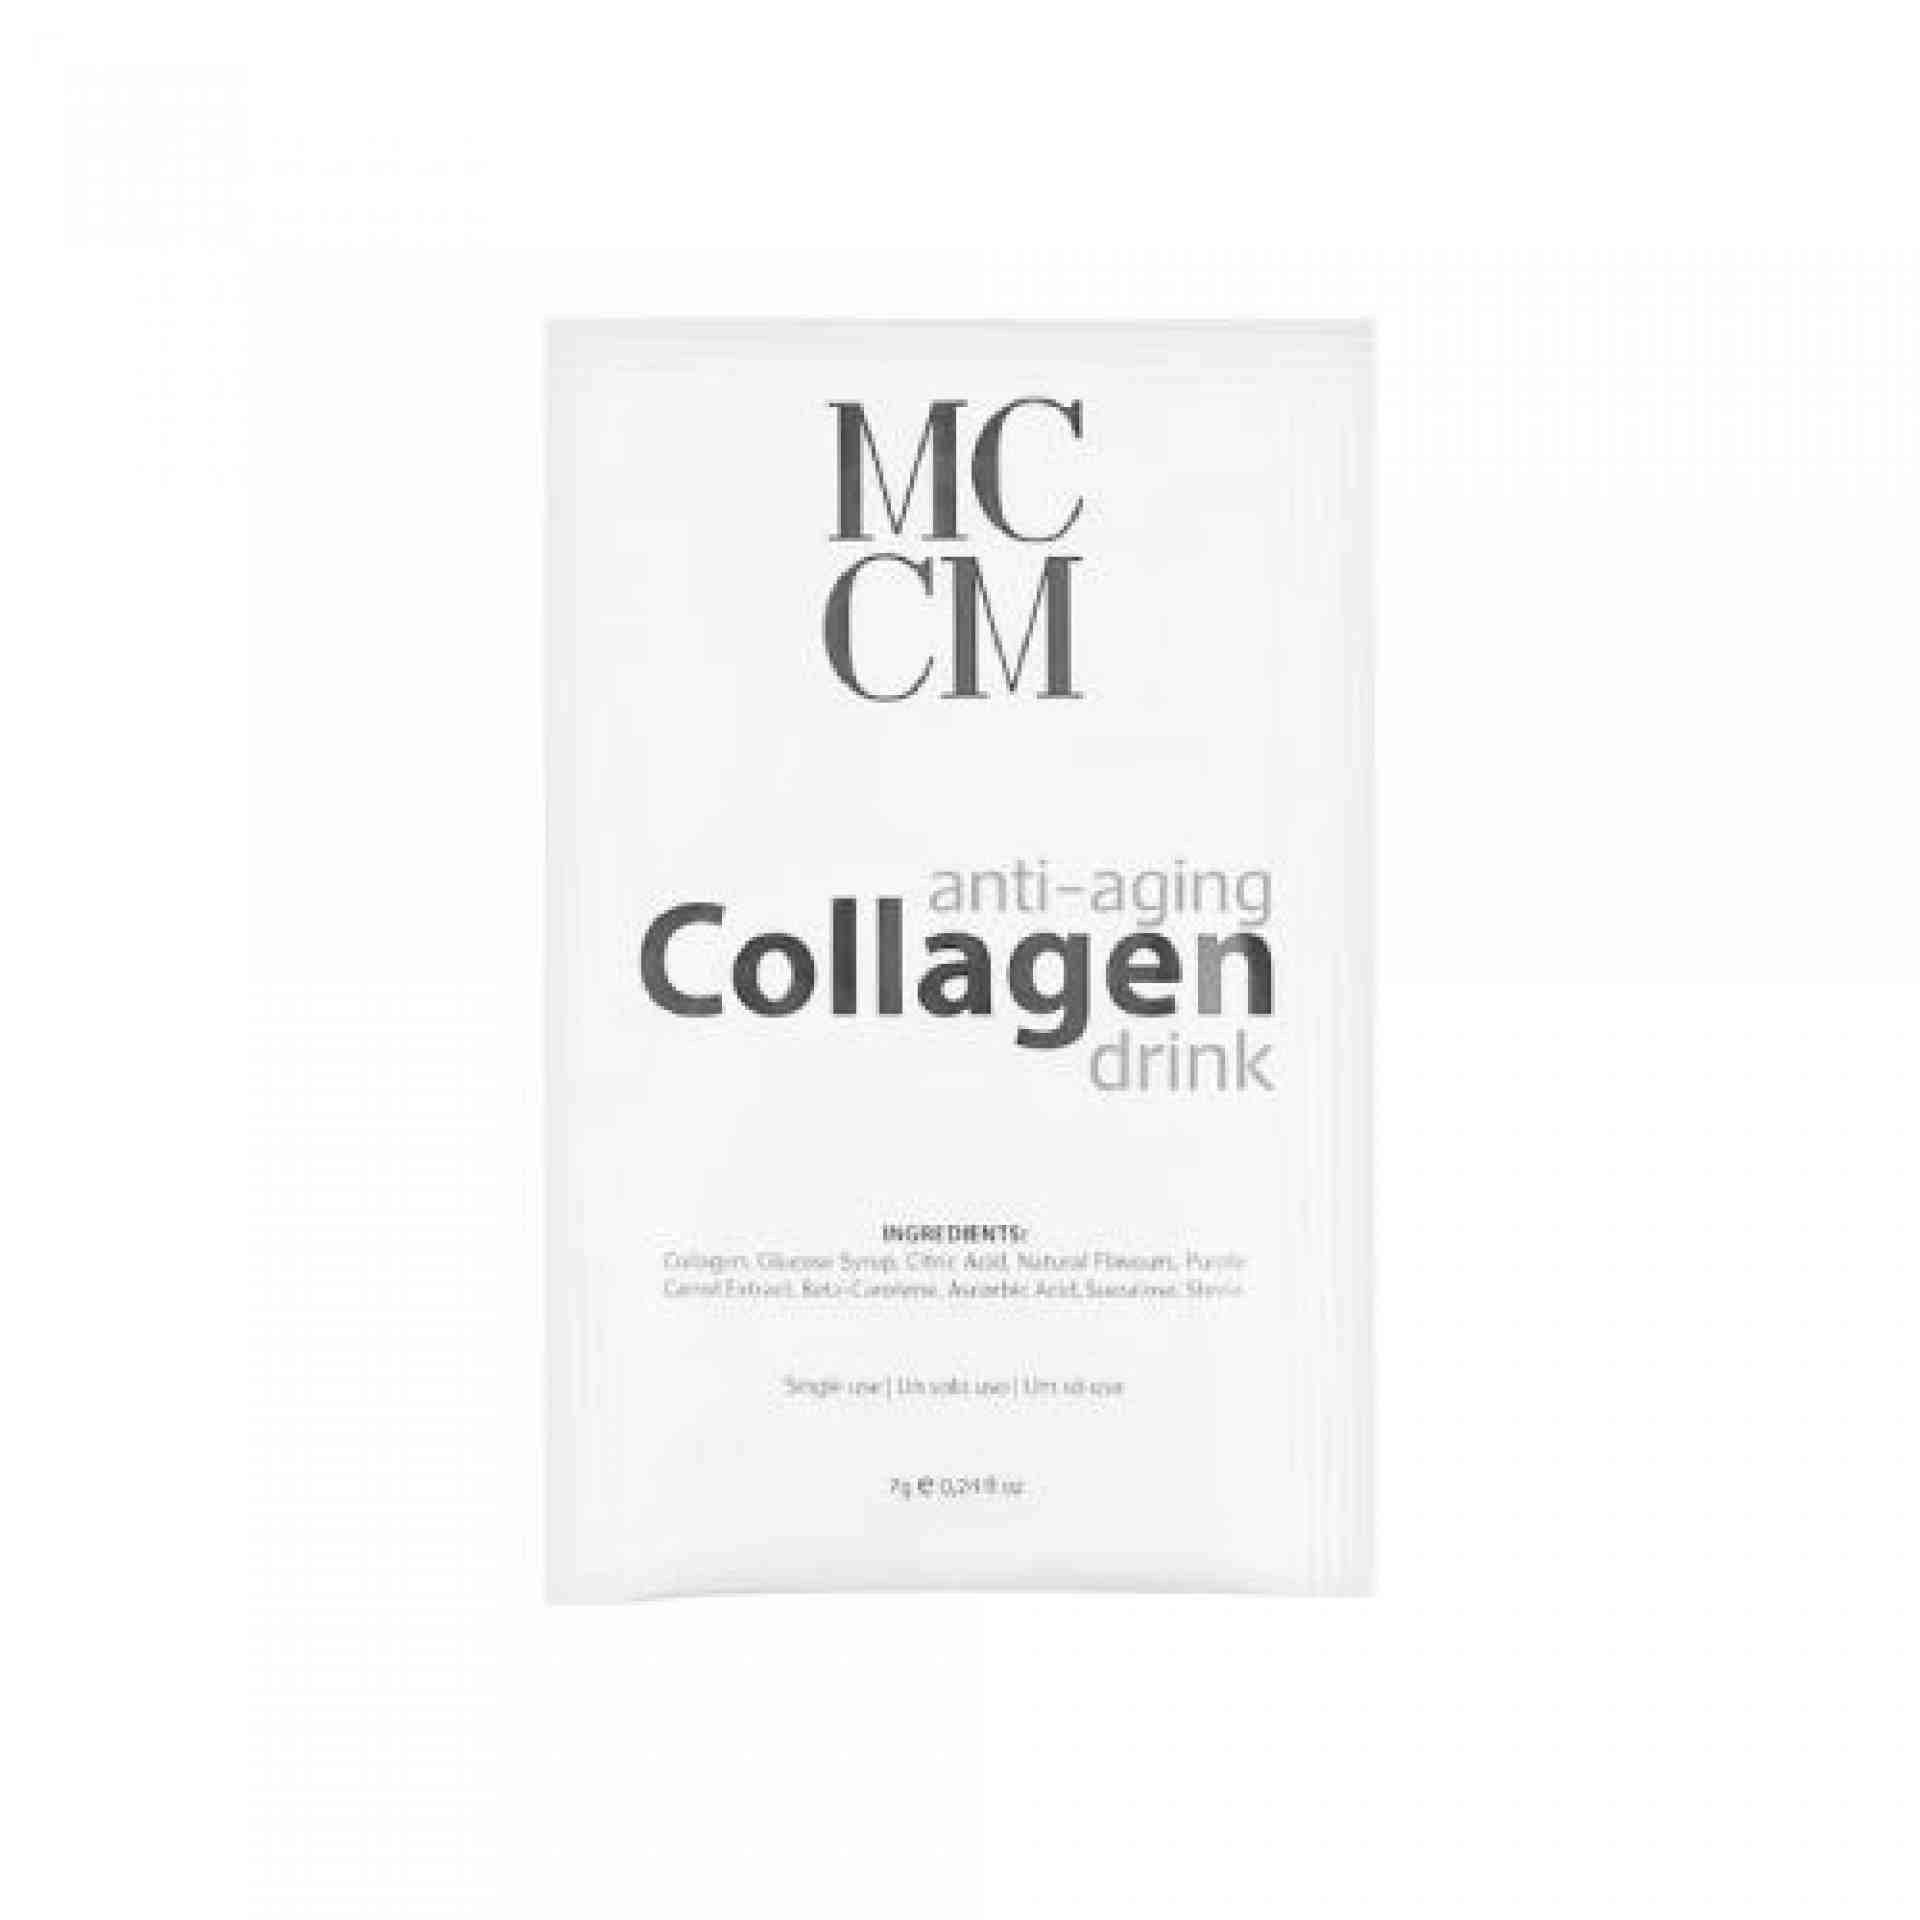 Antiaging Collagen Drink | Colágeno bebible antiedad 14x7ml - Phytotherapy - MCCM ®